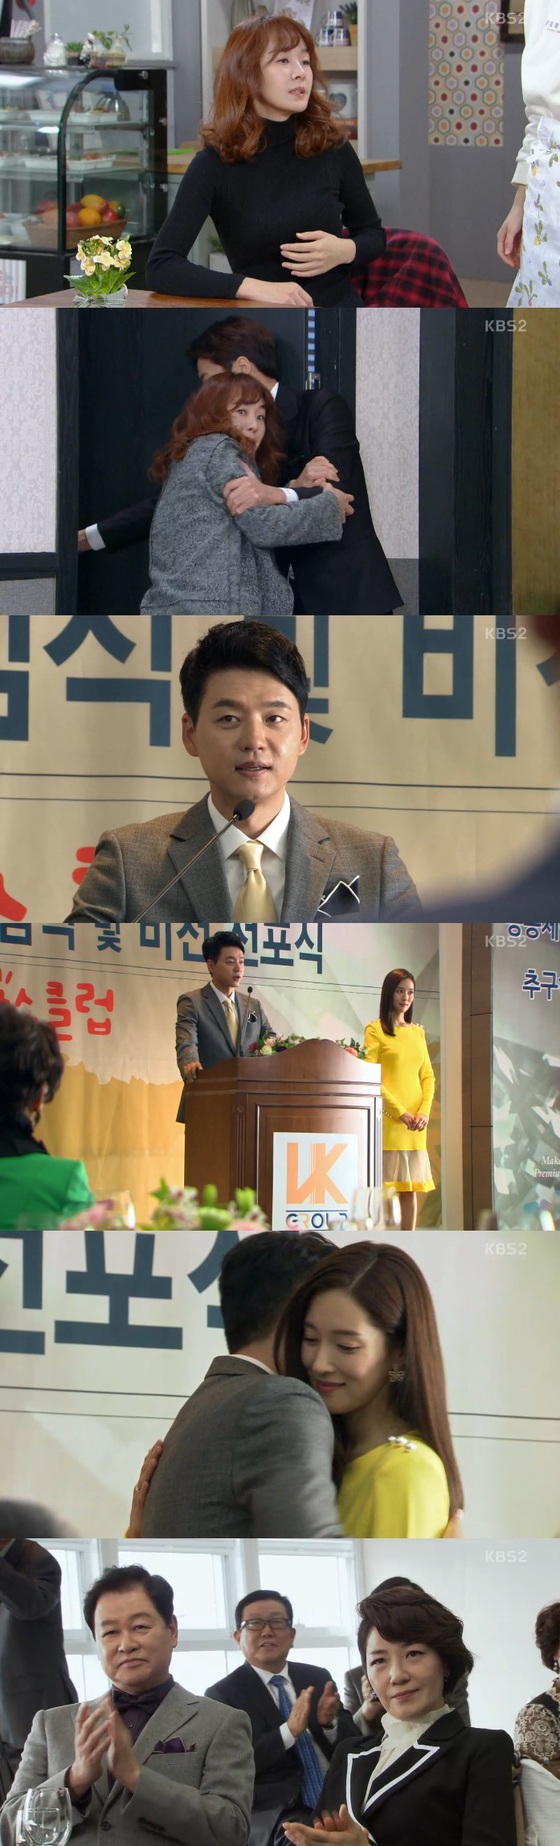 '다시 첫사랑' 김승수가 왕빛나와 계약결혼을 한 것으로 밝혀졌다. © News1star/ KBS2 '다시 첫사랑' 캡처